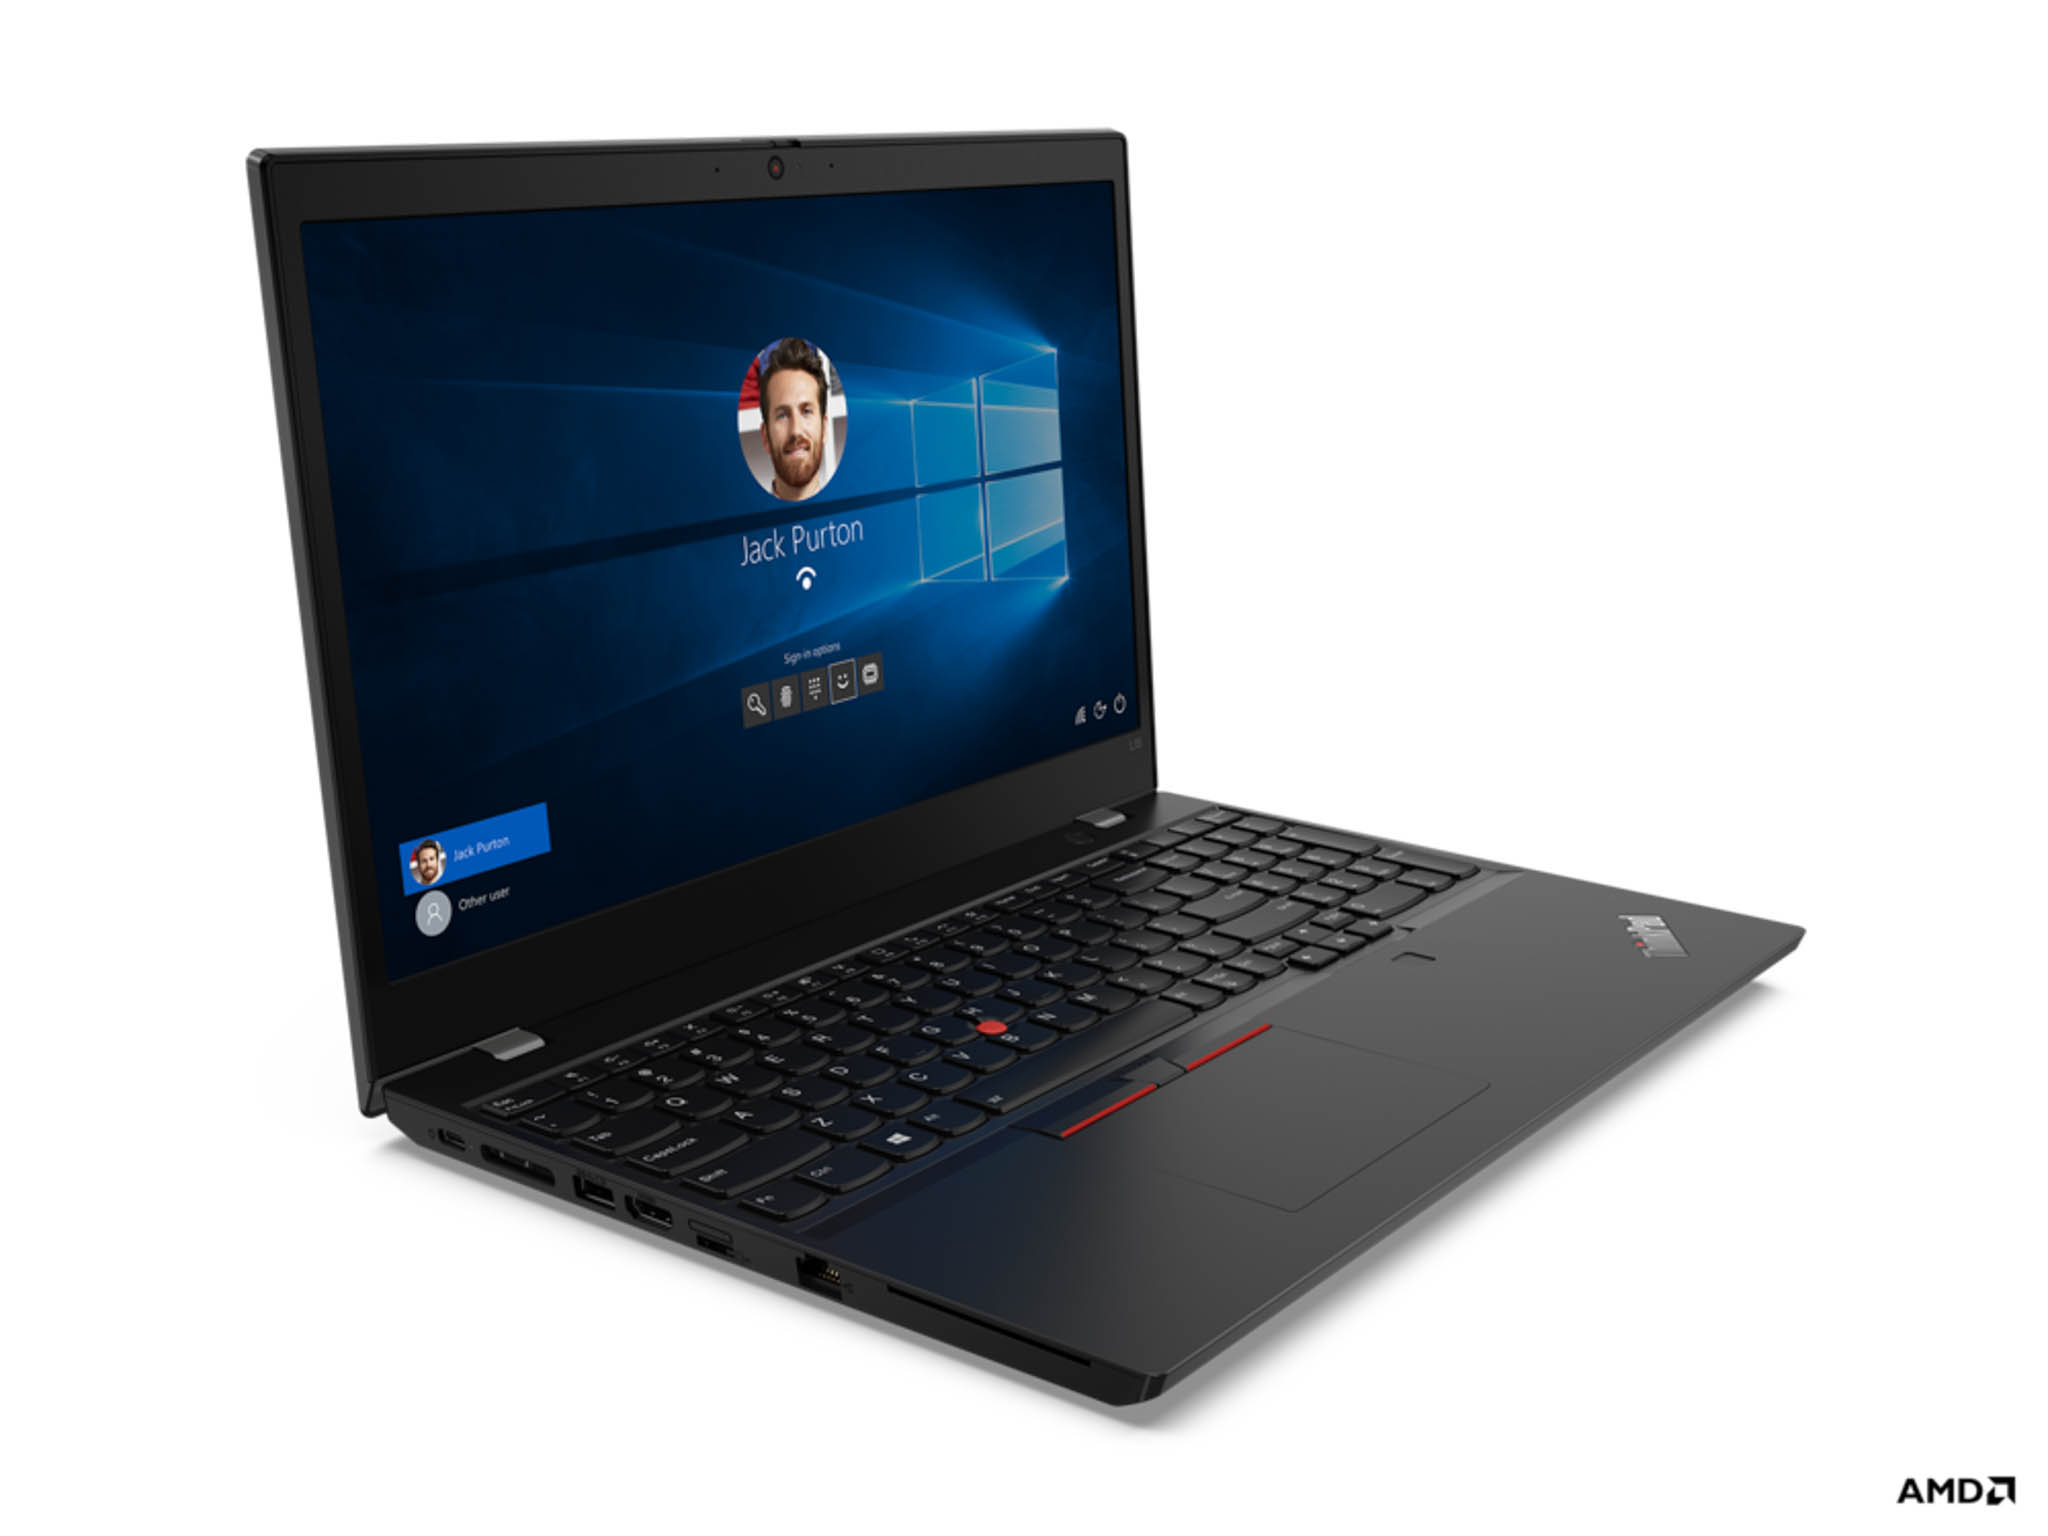 Lenovo ra mắt loạt laptop ThinkPad mới dành cho doanh nghiệp